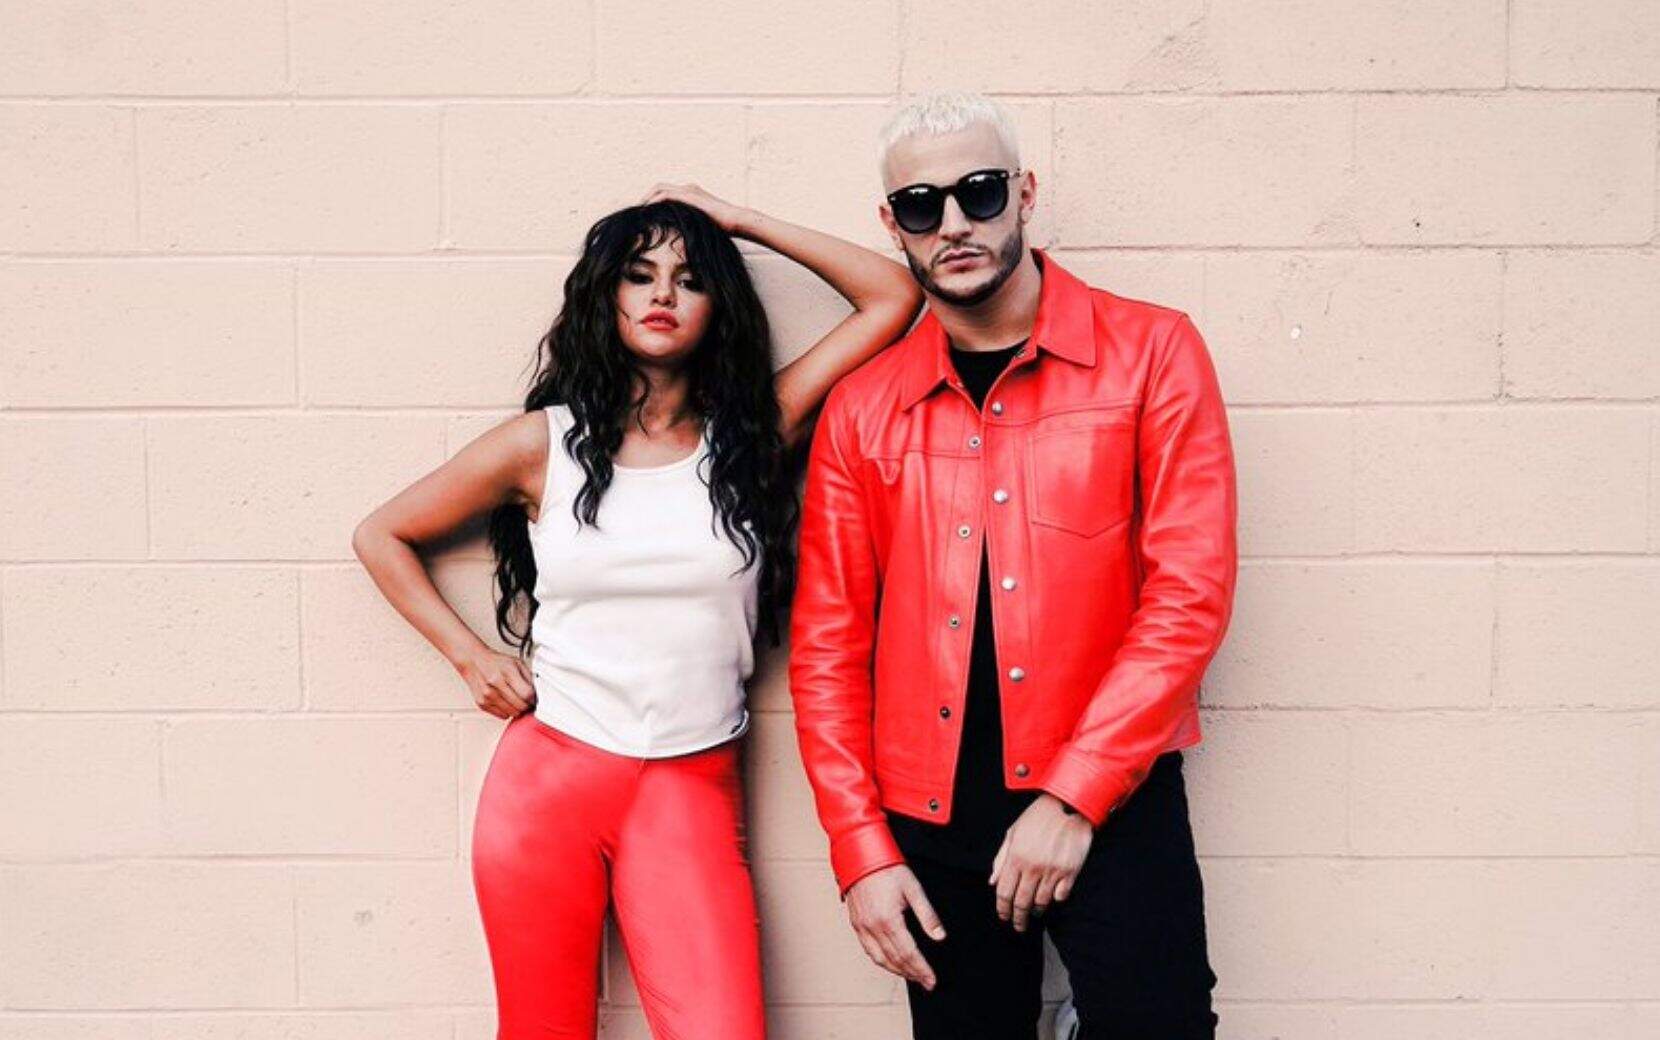 DJ Snake anuncia nova parceria com Selena Gomez no hit “Selfish Love” e web vai à loucura - Metropolitana FM